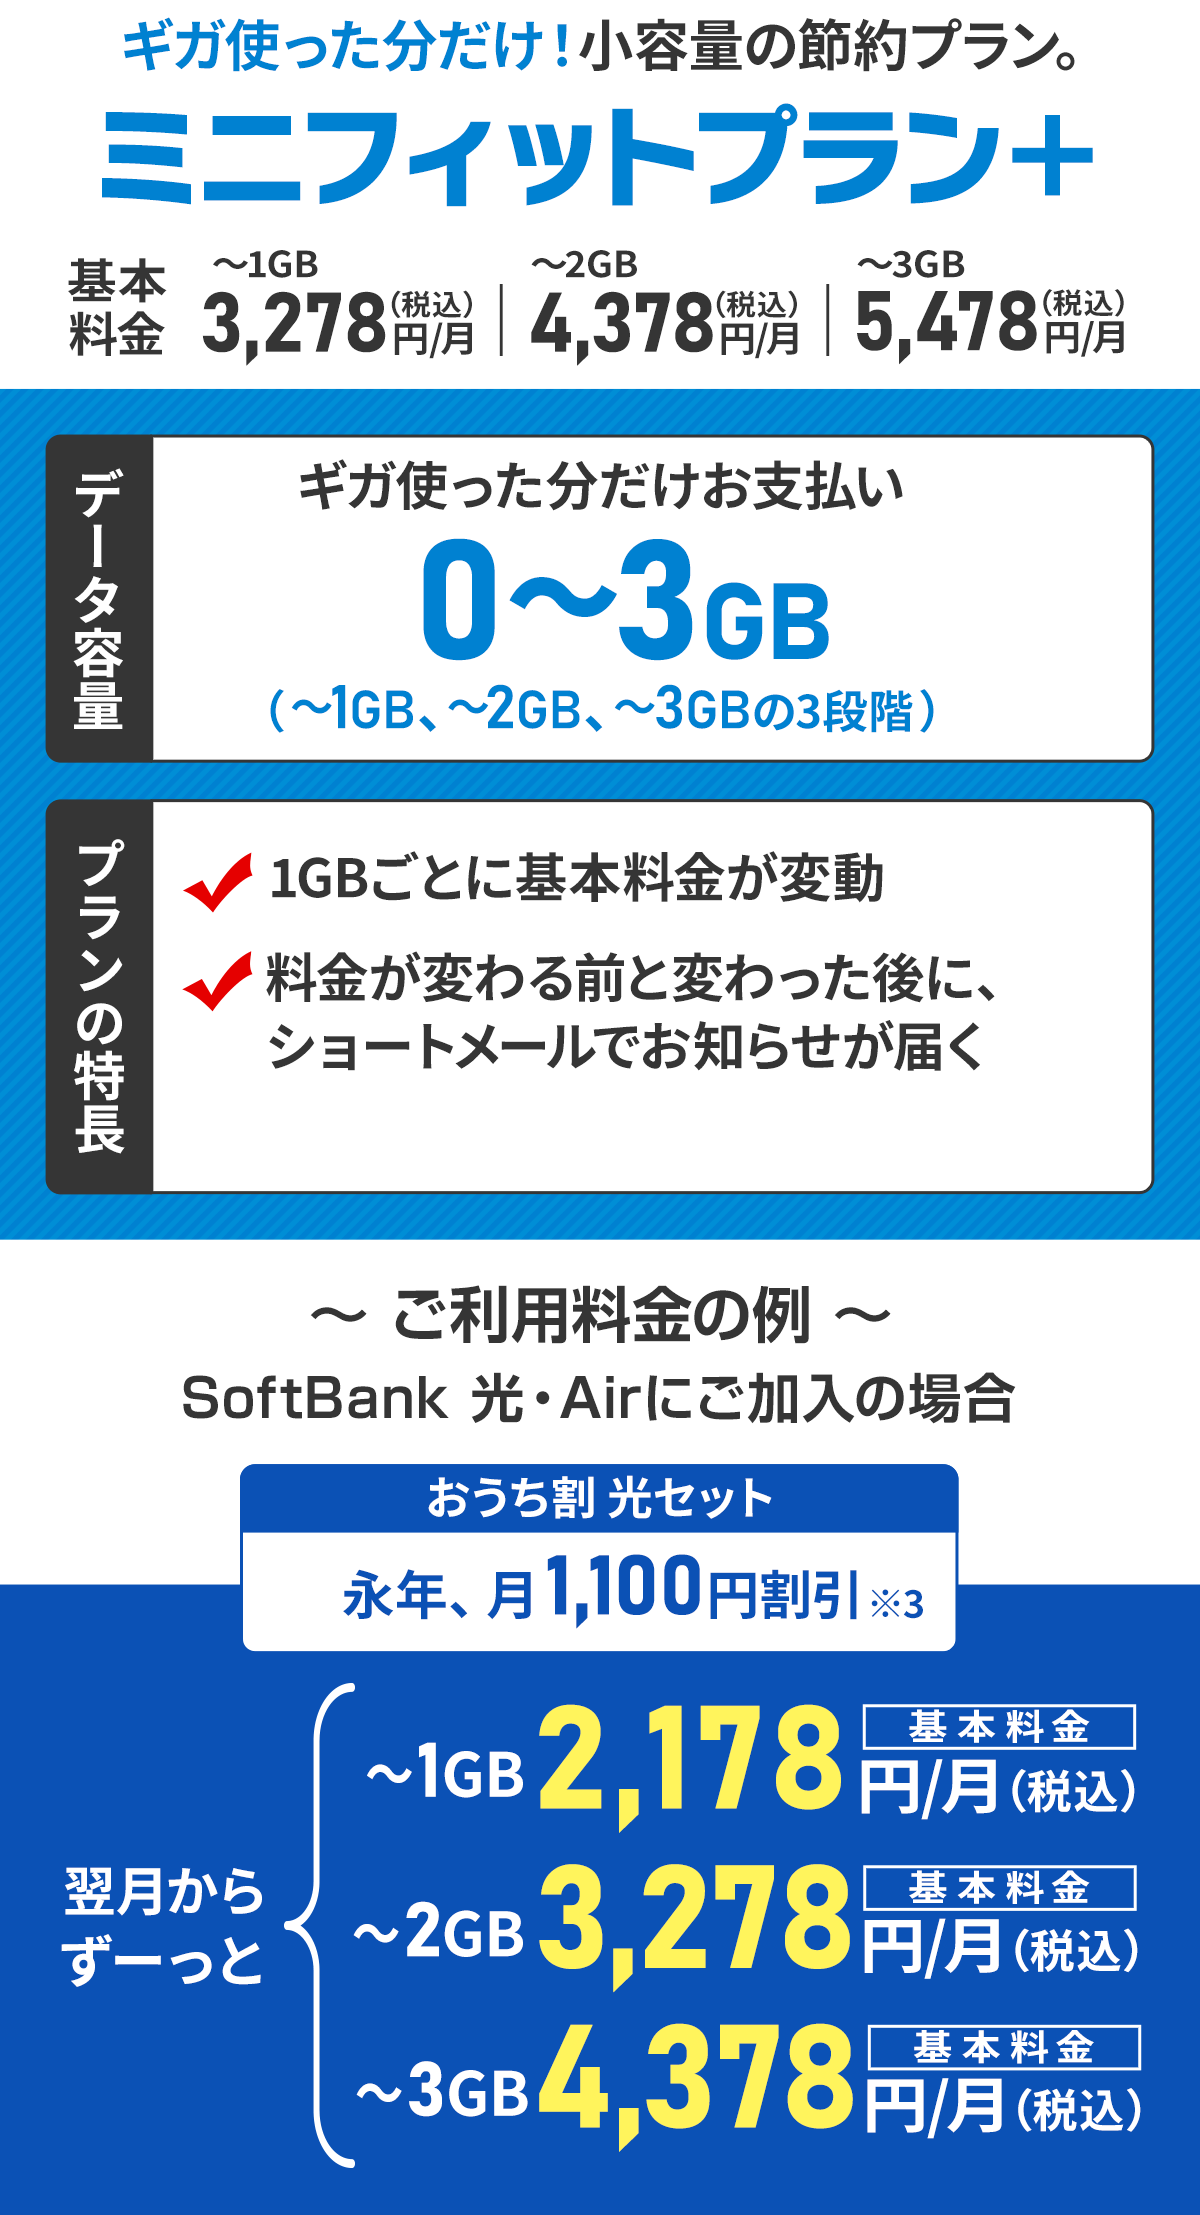 ソフトバンク料金プラン「ミニフィットプラン＋」当店キャッシュバック対象！